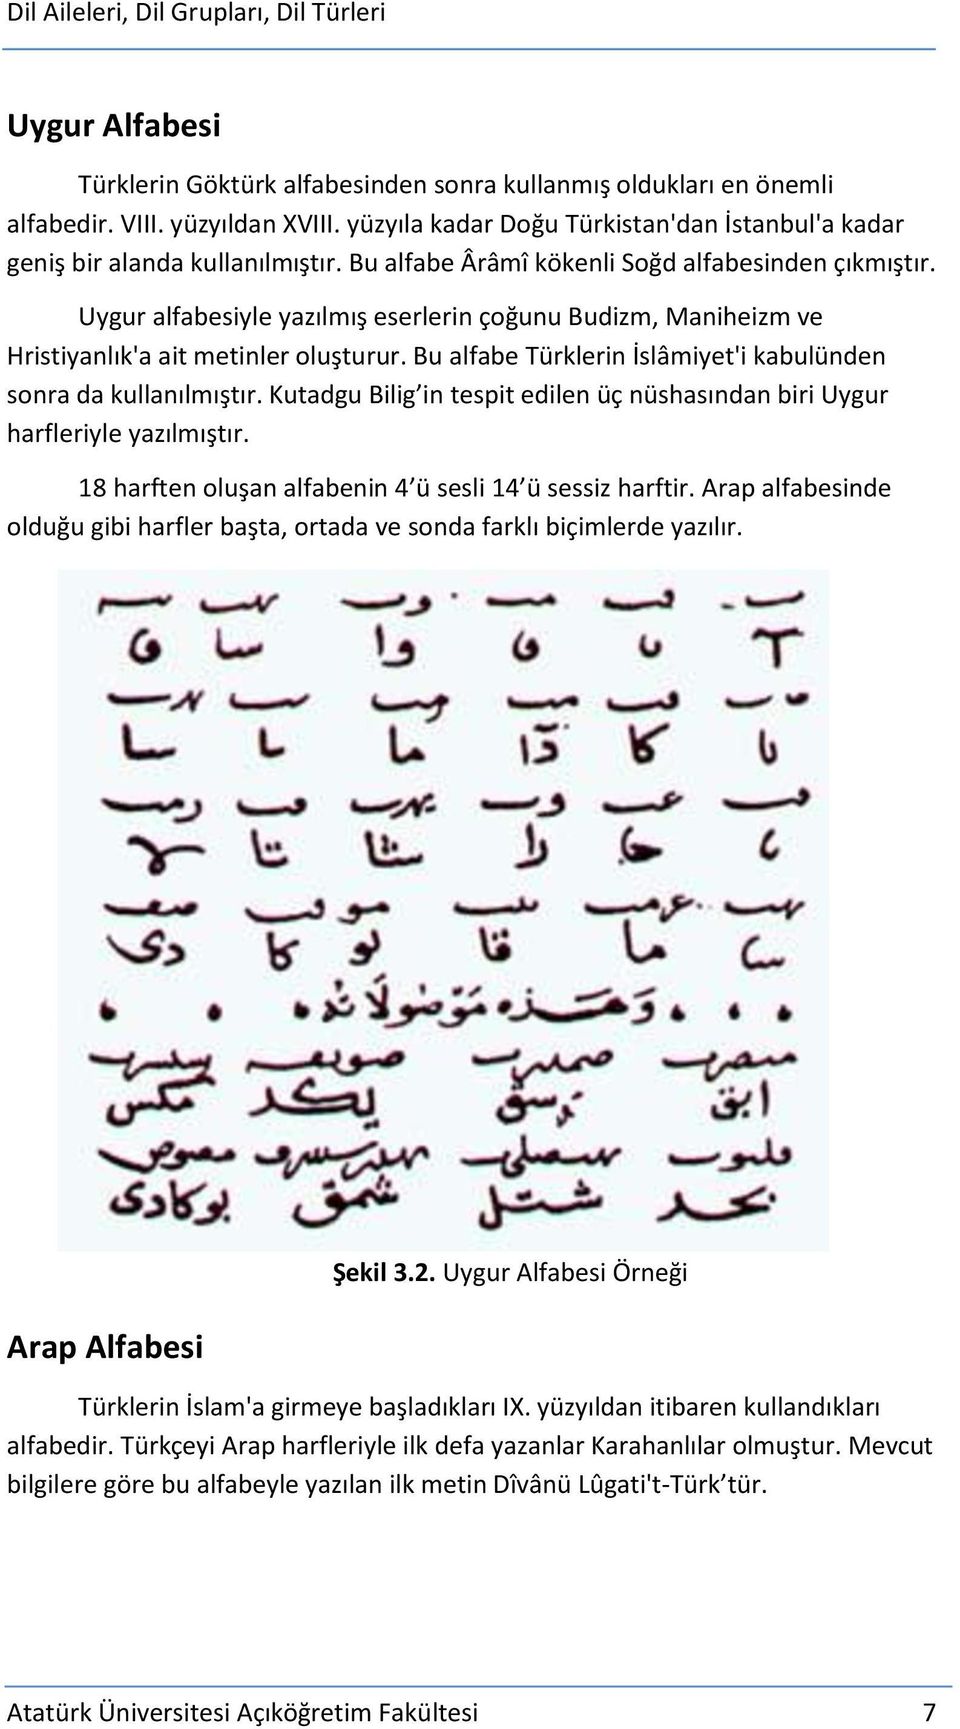 Bu alfabe Türklerin İslâmiyet'i kabulünden sonra da kullanılmıştır. Kutadgu Bilig in tespit edilen üç nüshasından biri Uygur harfleriyle yazılmıştır.